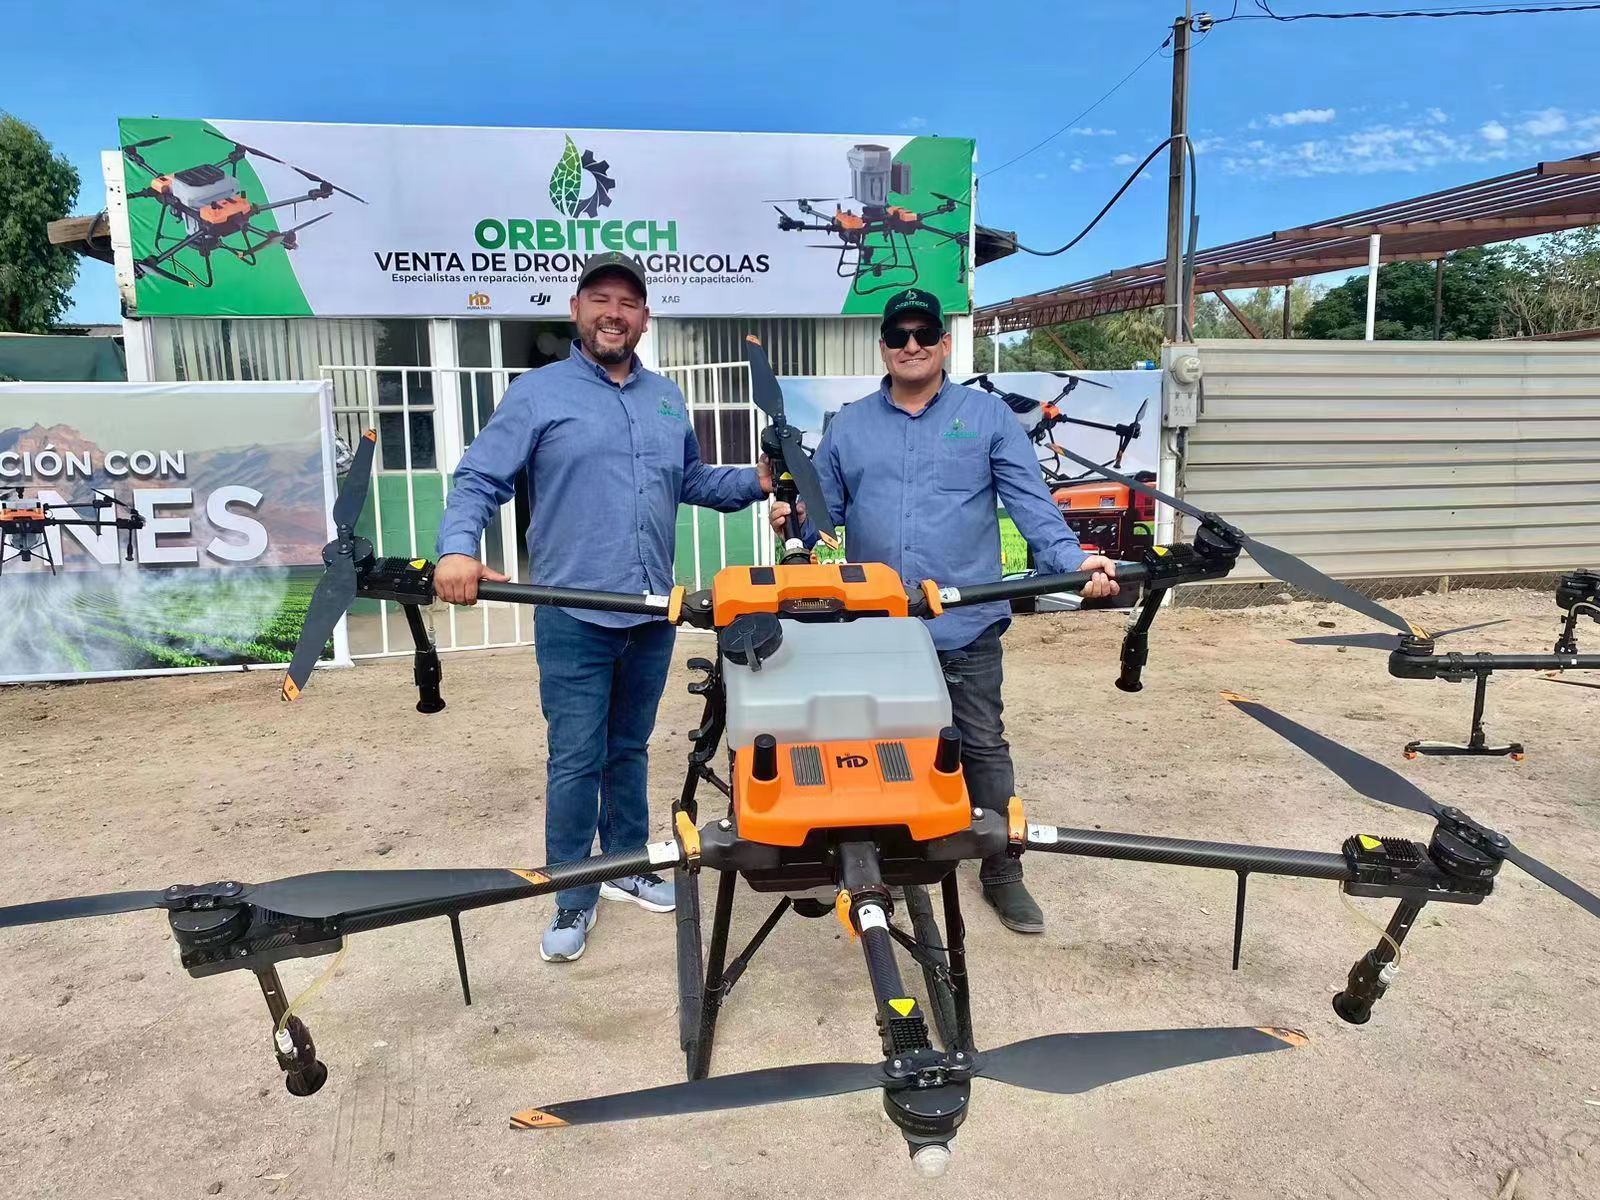 El futuro de la agricultura: aprovechar el poder de los drones fitosanitarios